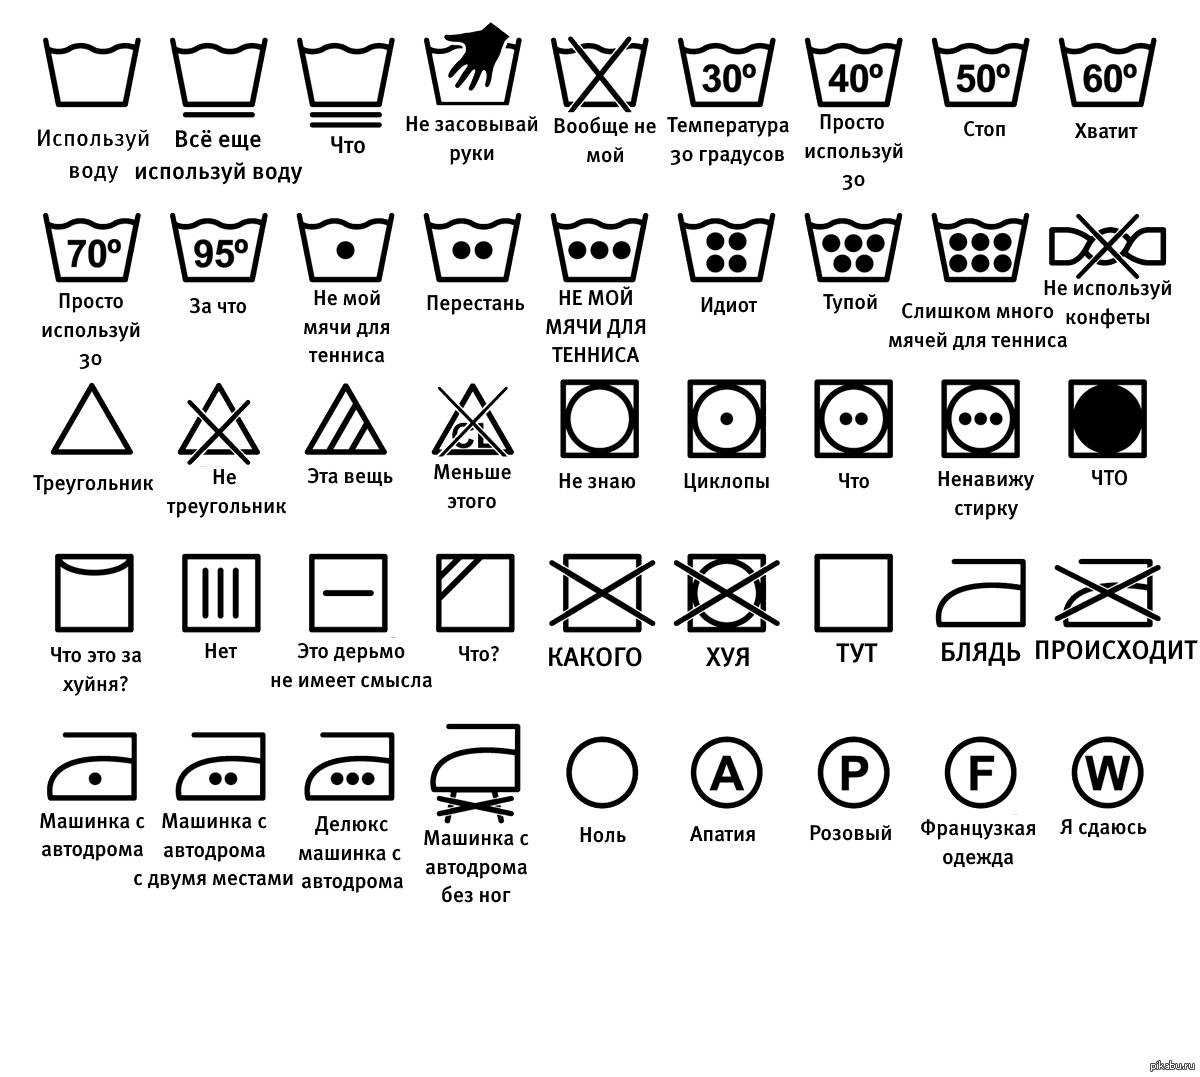 Знаки стирки на одежде (расшифровка, таблица) что обозначают ярлыки на одежде